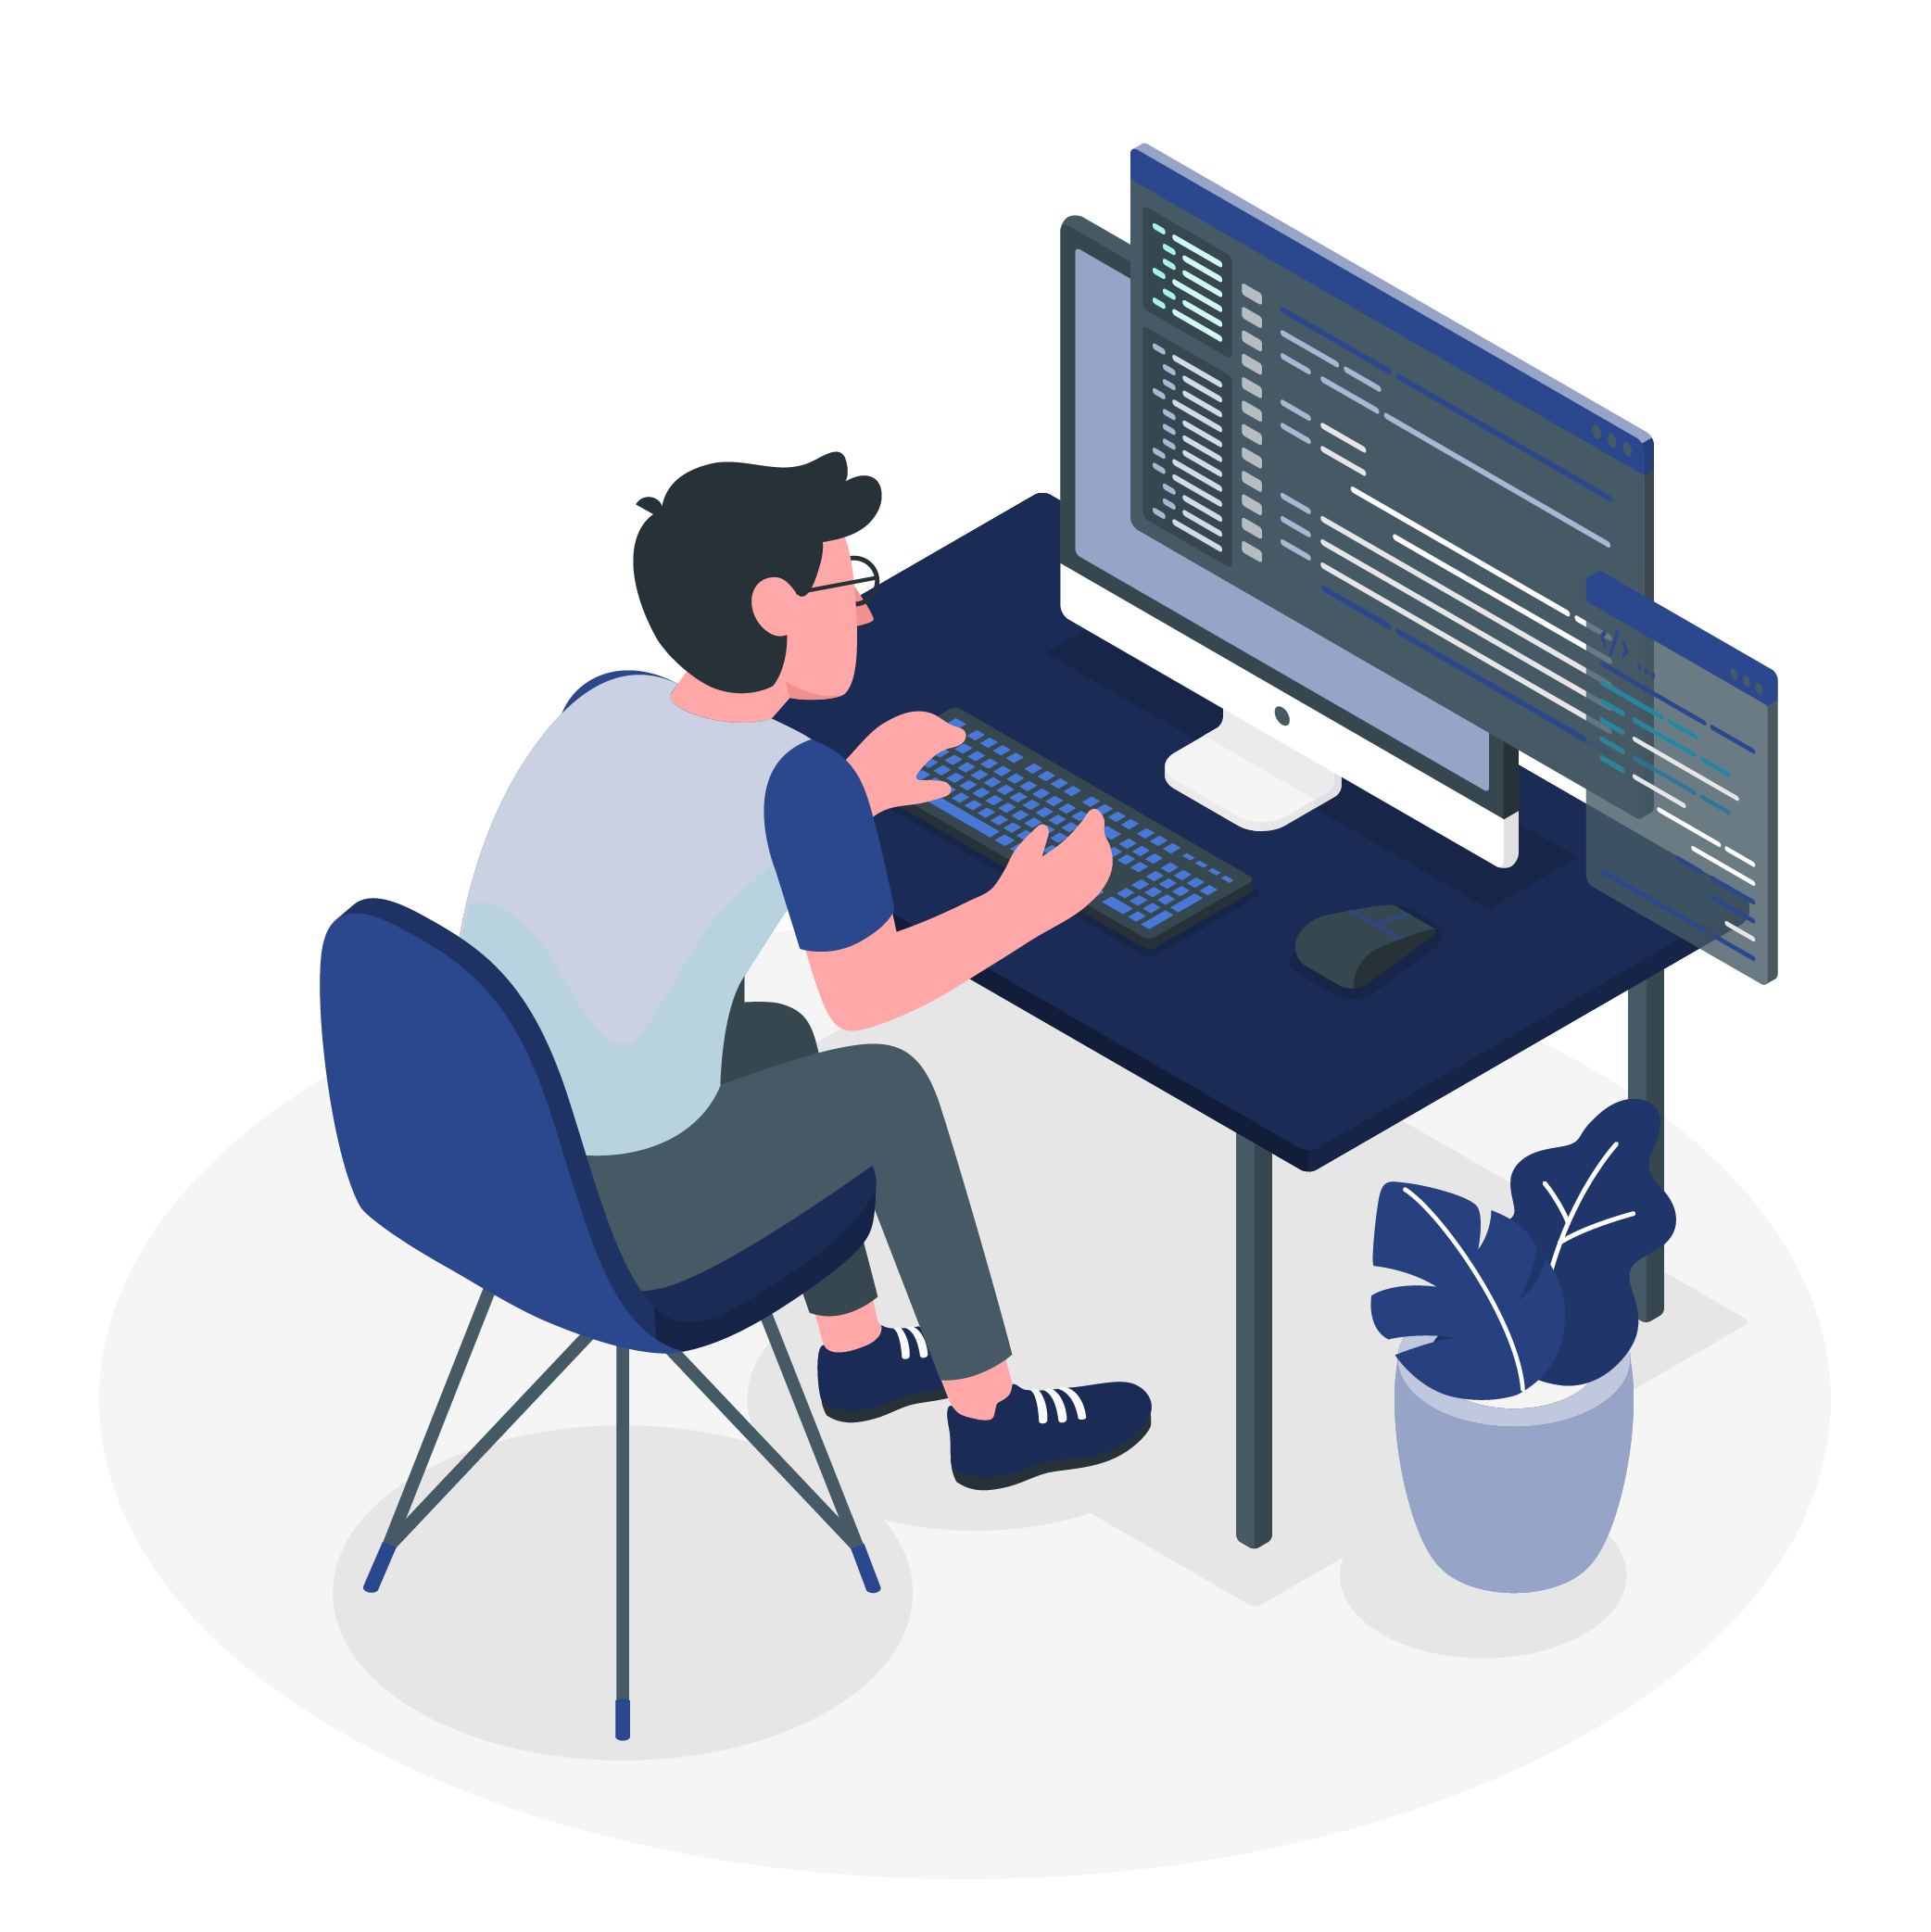 rappresentazione grafica stilizzata di un ragazzo al computer, seduto ad una scrivania